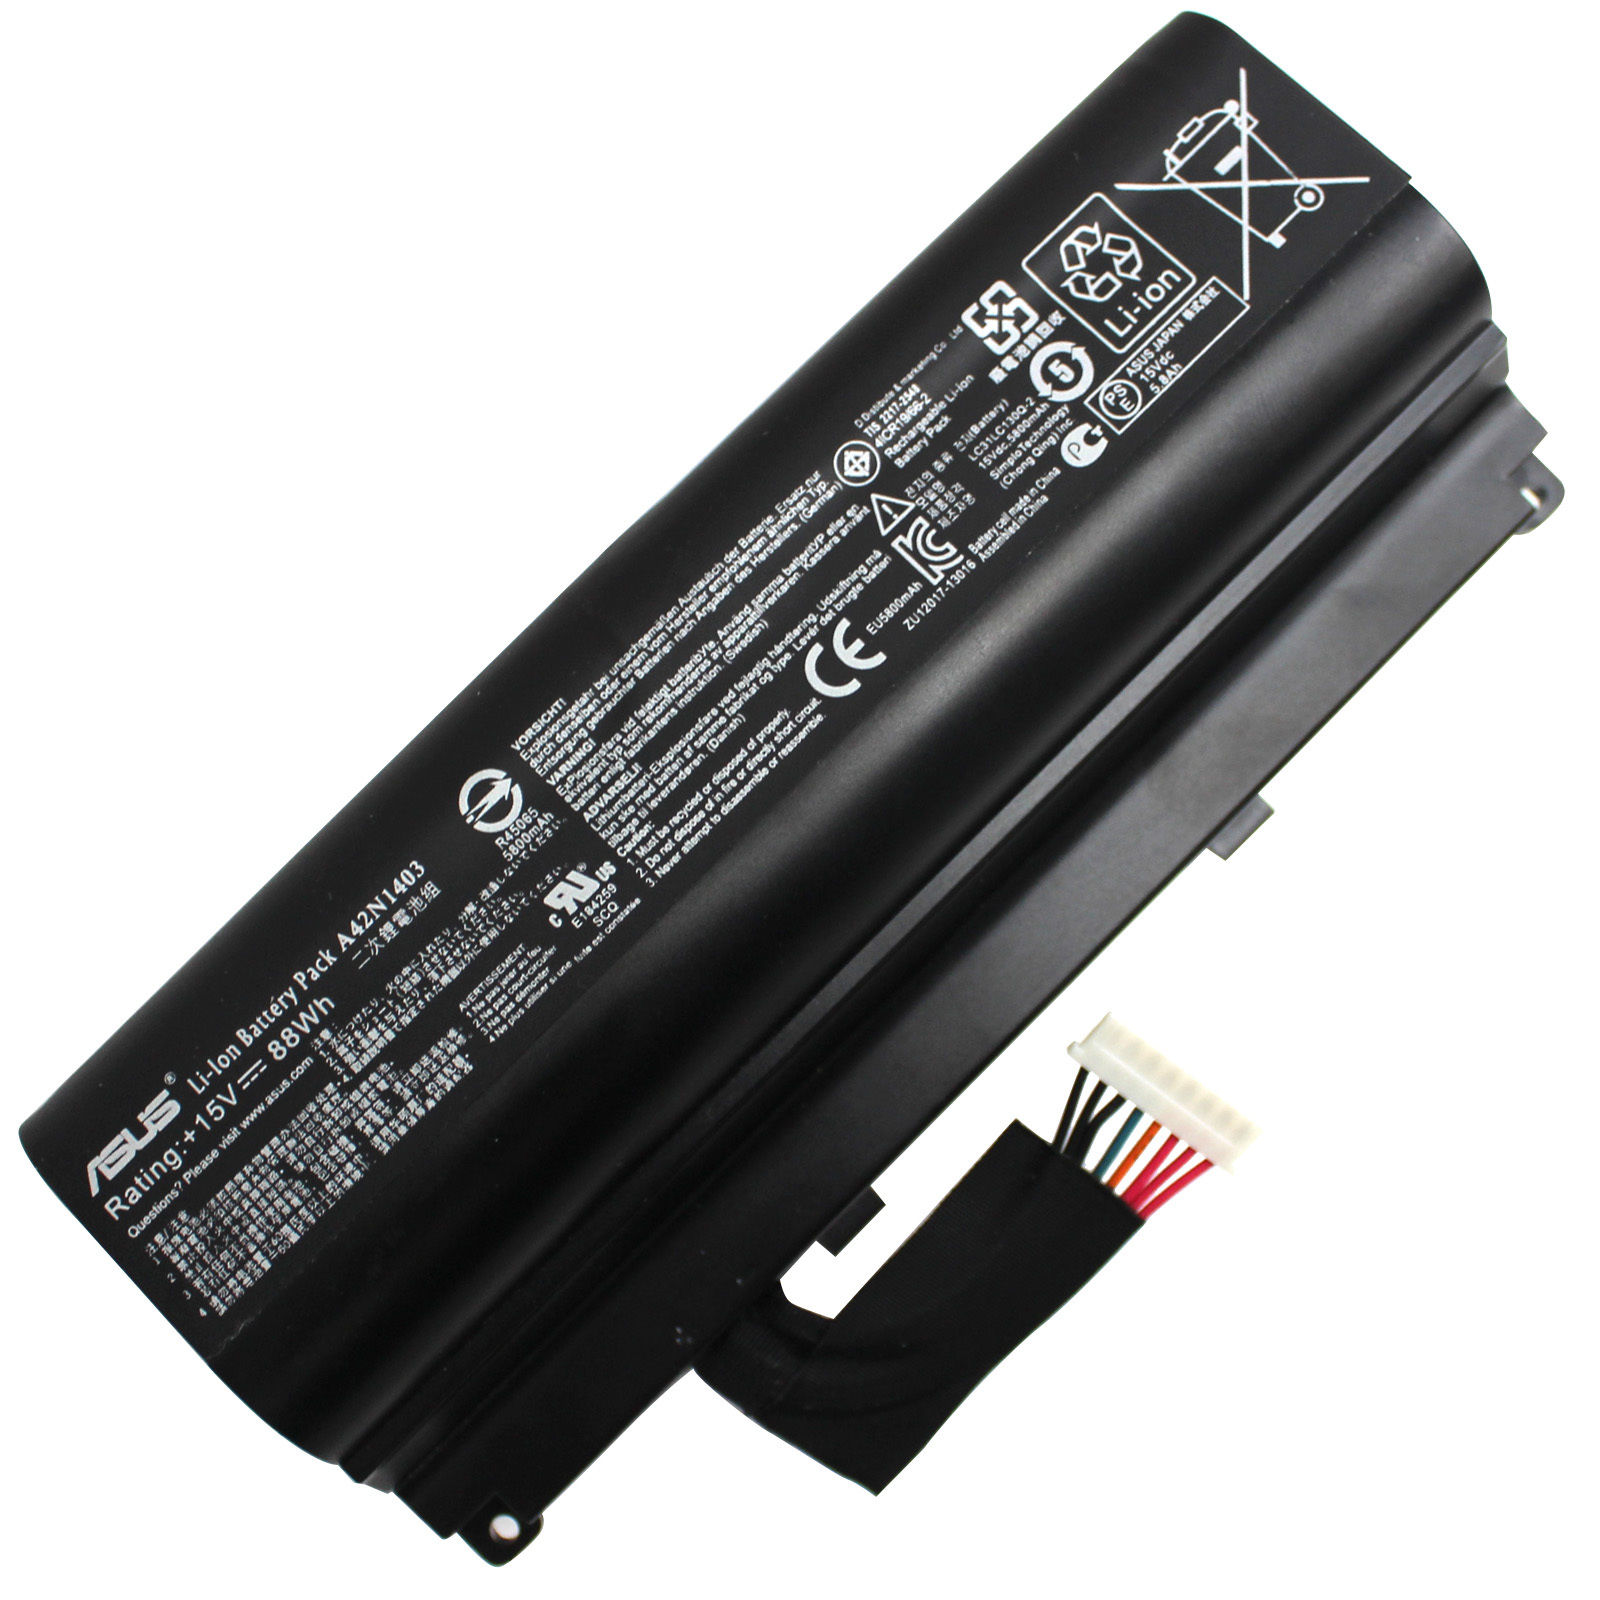 88Wh 15V Batterie Asus ROG G751J G751JY GFX71 5800mAh